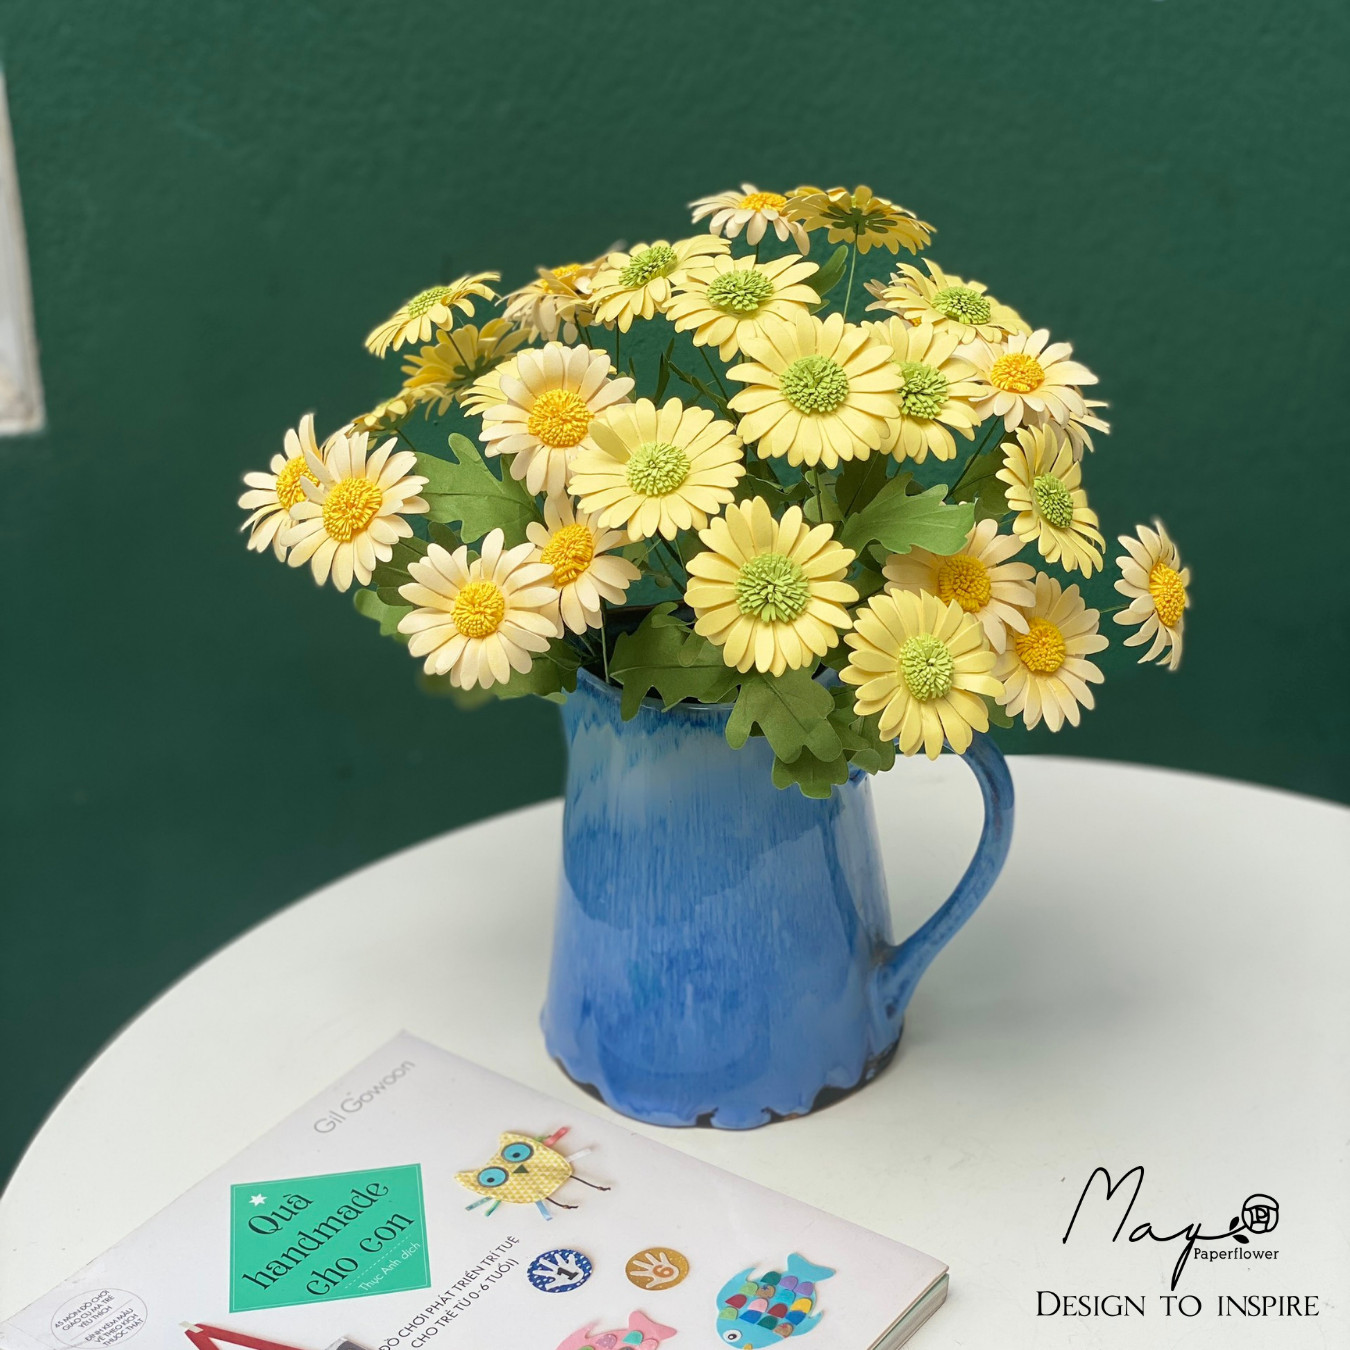 Hoa giấy handmade trang trí, Hoa cúc Daisy nhiều màu, Maypaperflower - hoa giấy nghệ thuật, decor nhà ở, văn phòng